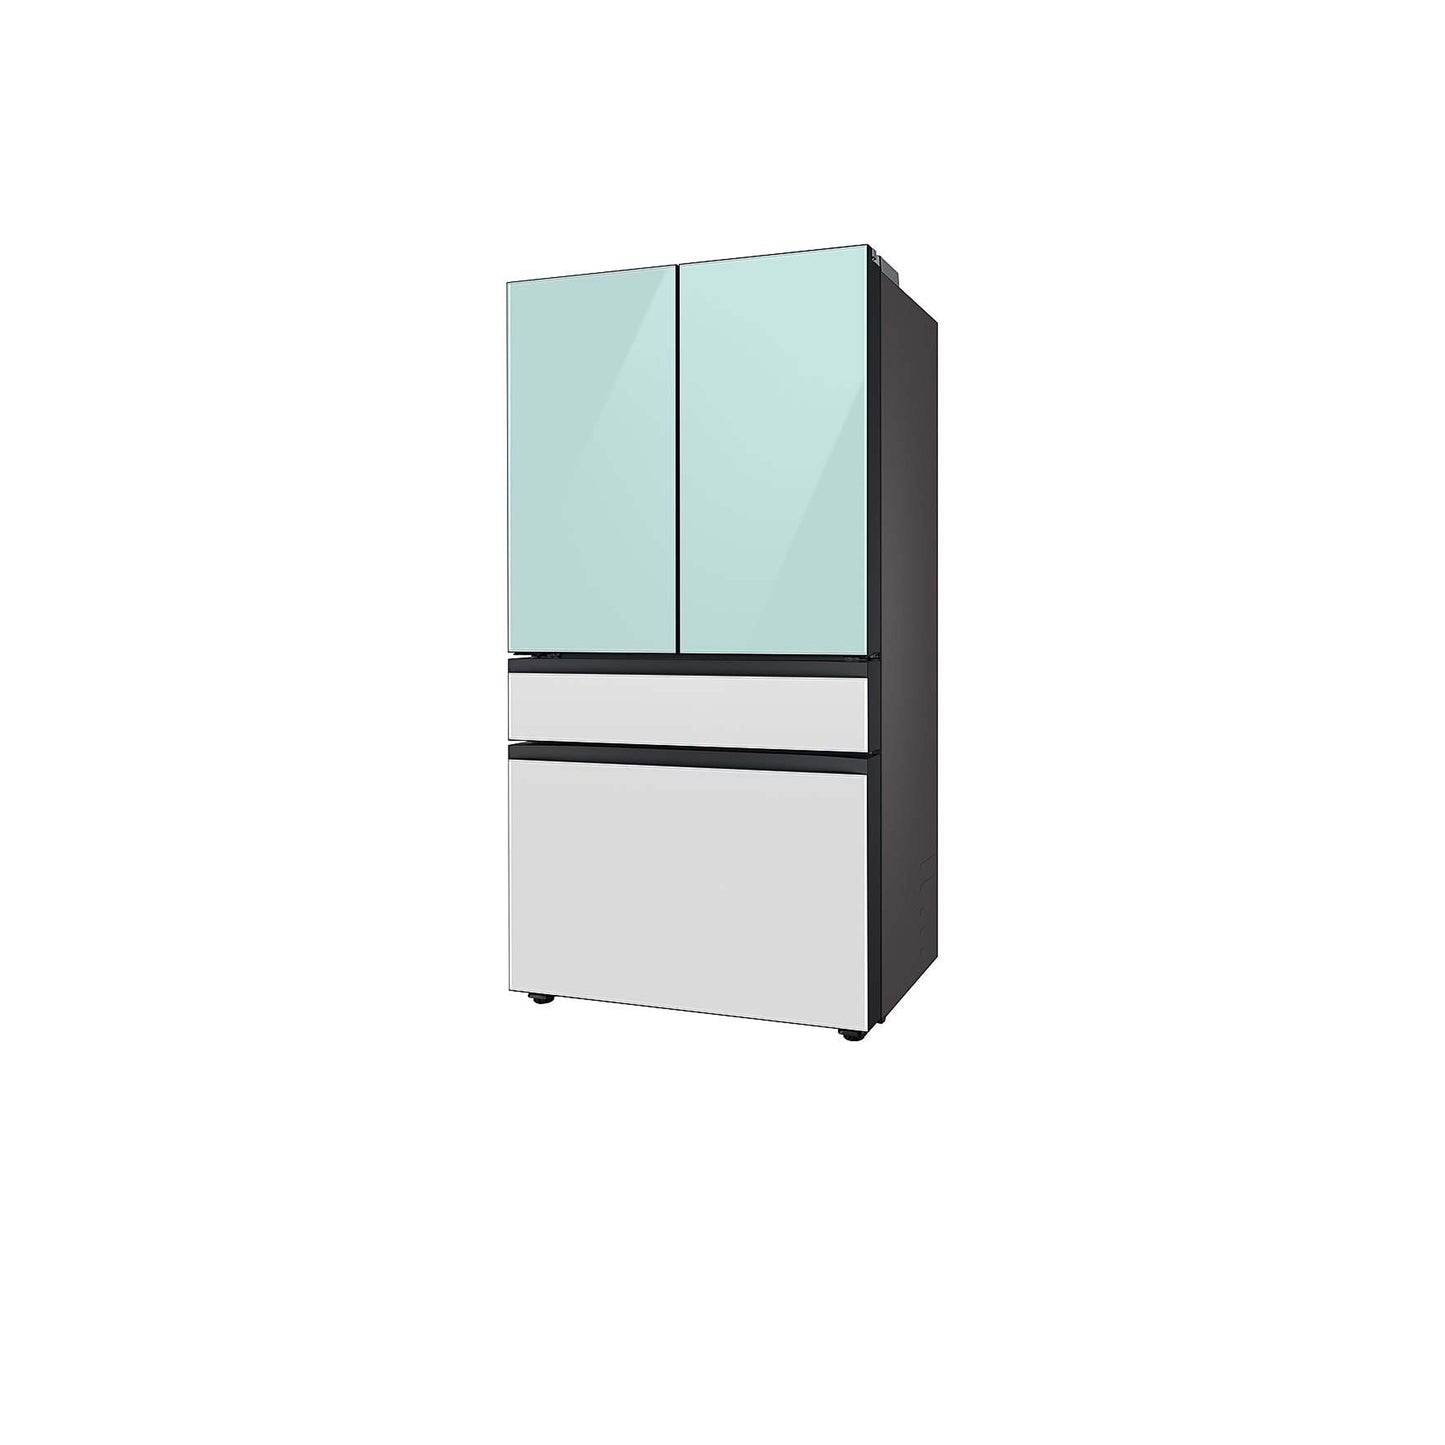 Bespoke 4-Door French Door Refrigerator (23 cu. ft.) with Customizable Door Panel Colors and Beverage Center™ in Sunrise Yellow Glass.